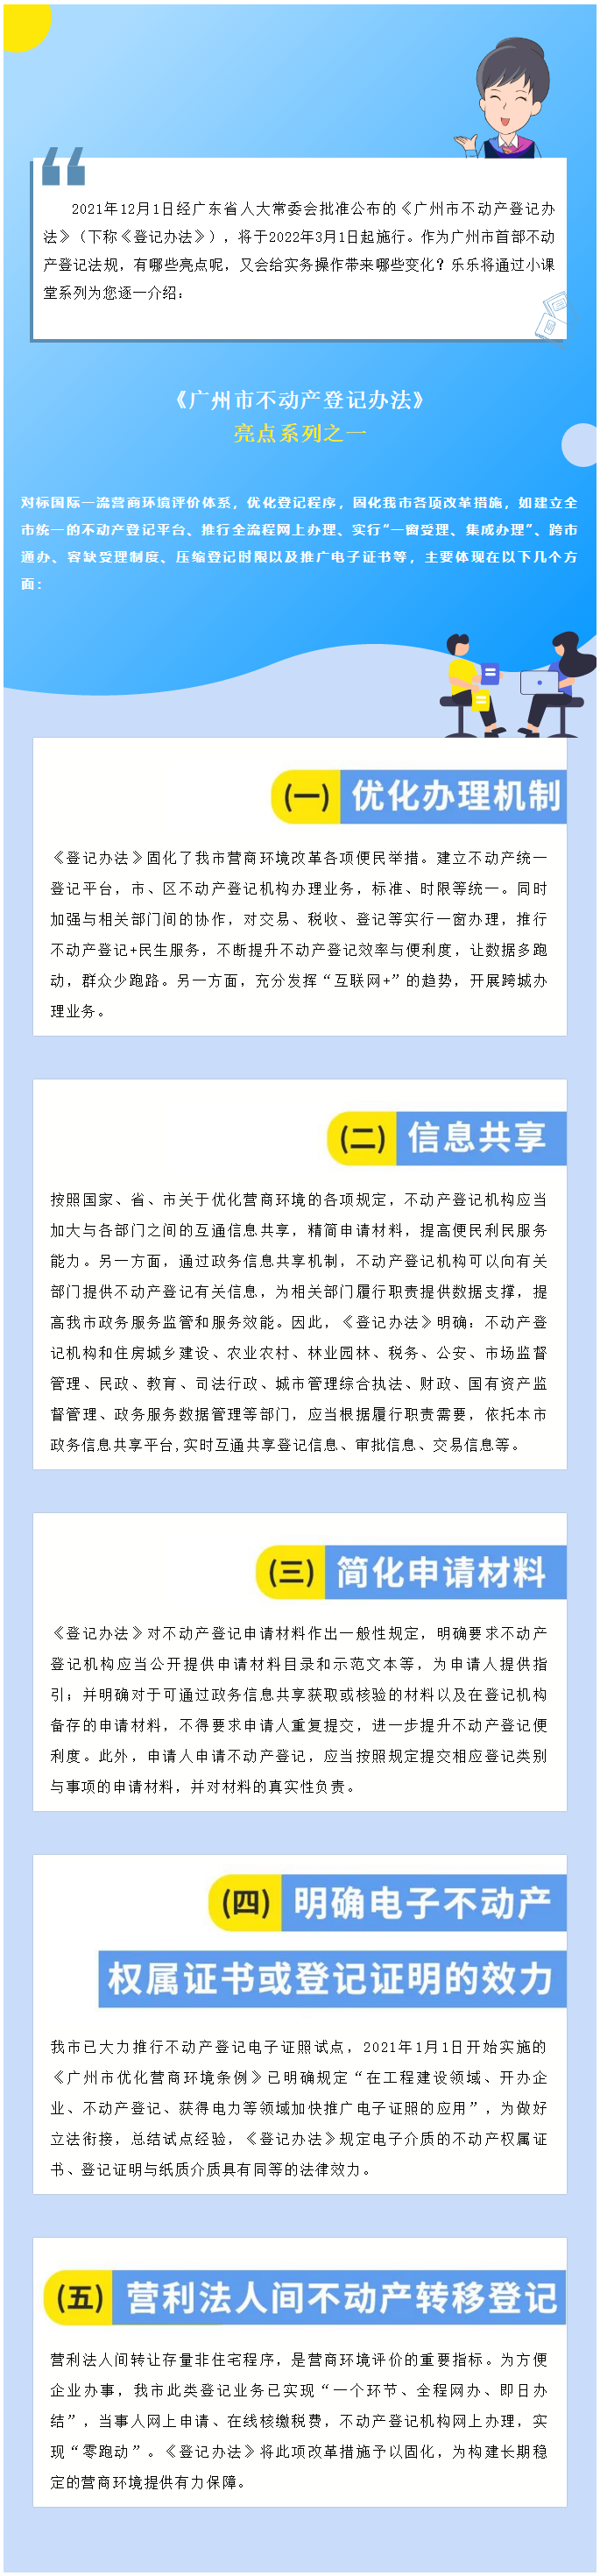 《广州市不动产登记办法》亮点系列之一1.png